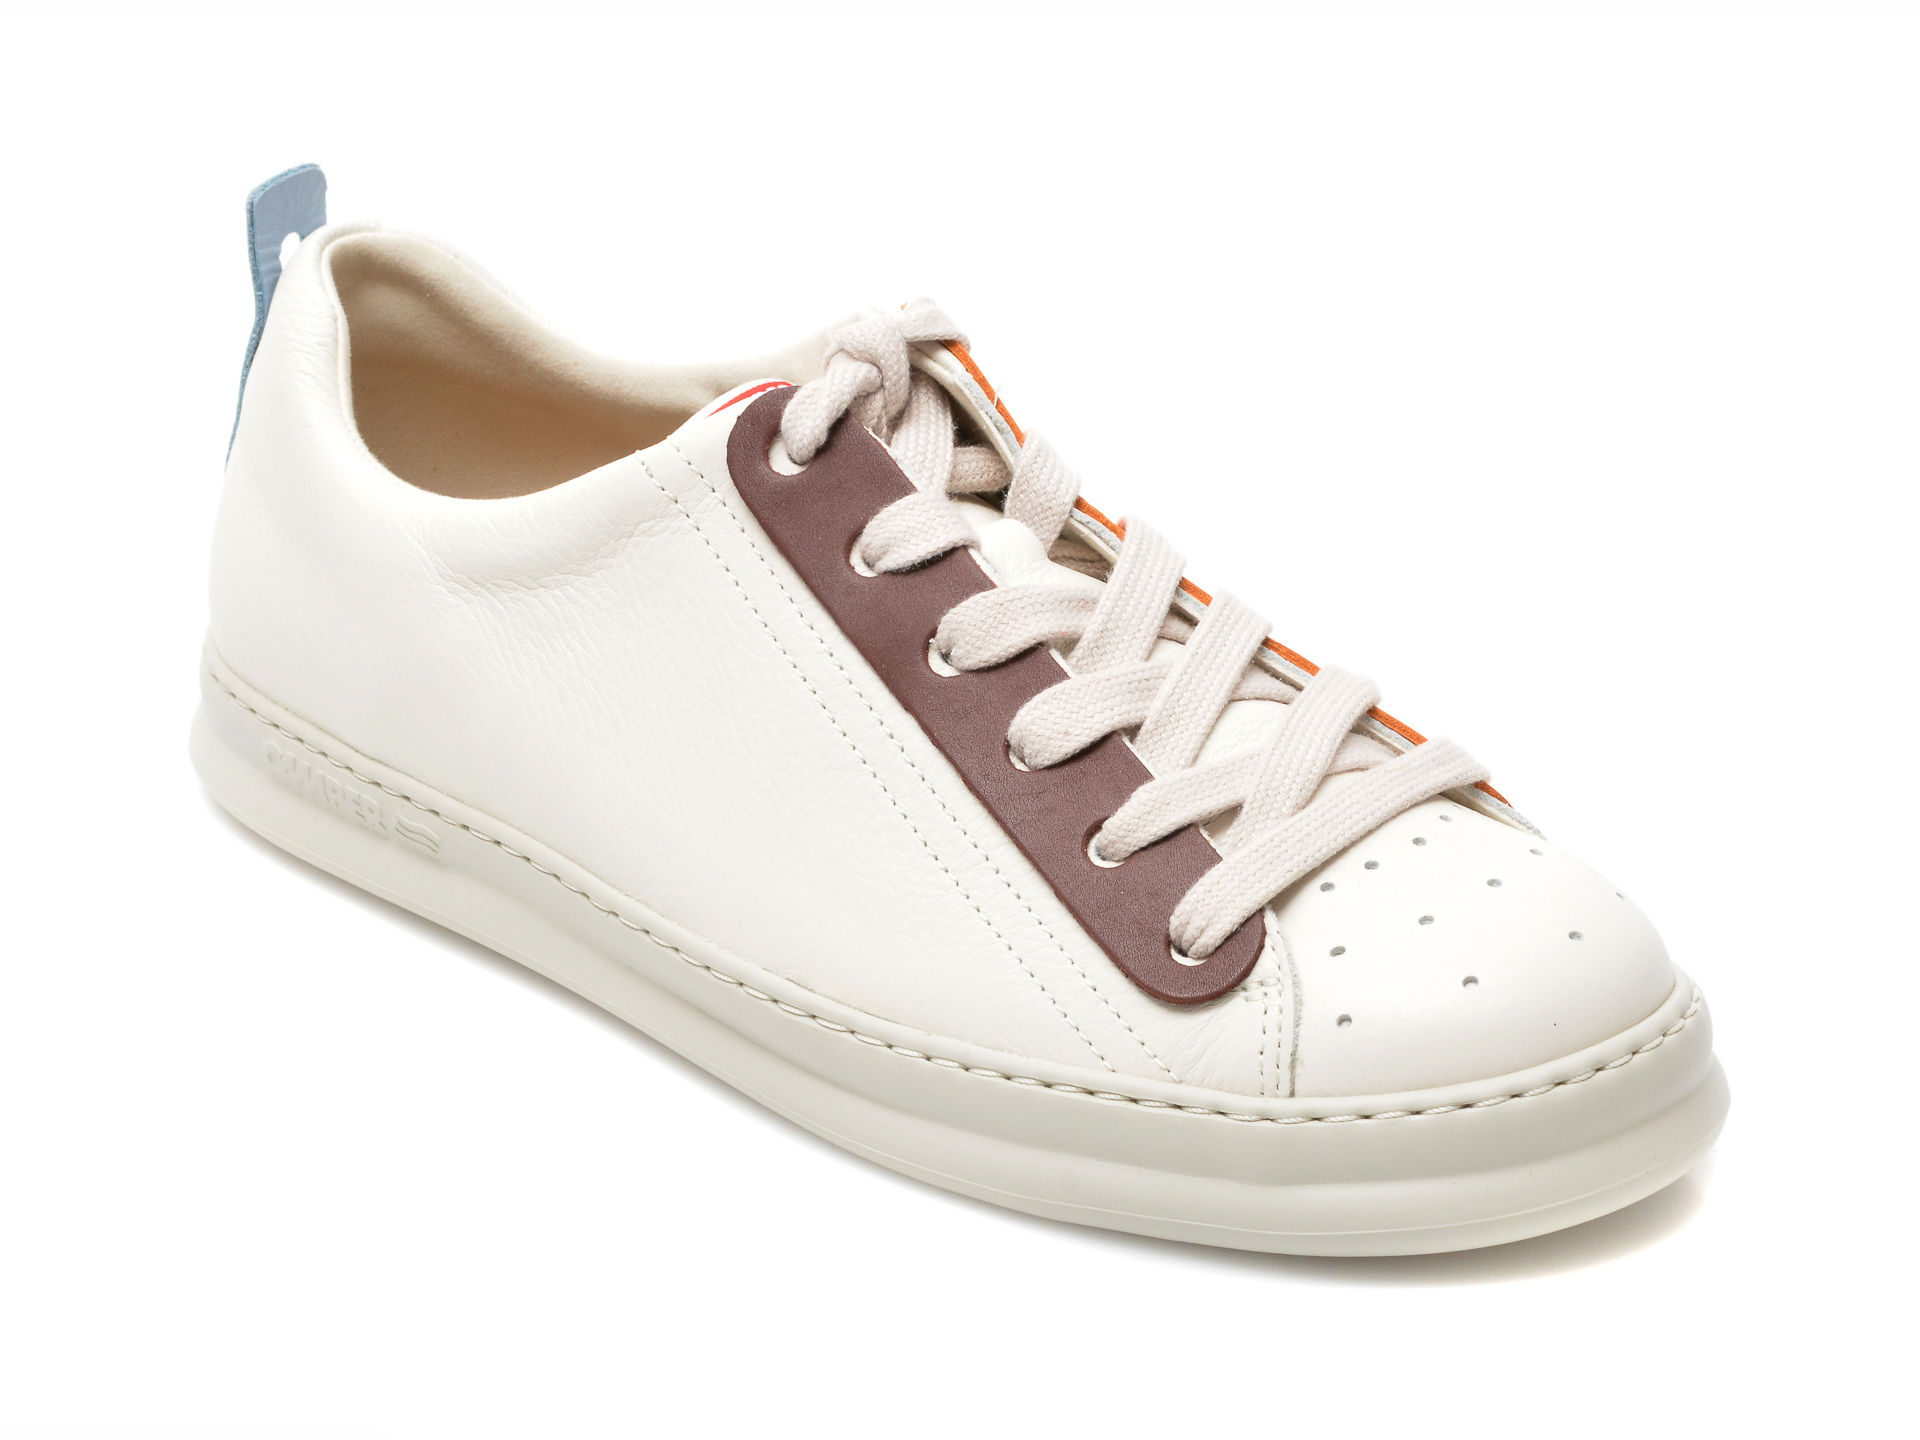 Pantofi sport CAMPER albi, K100805, din piele naturala Camper